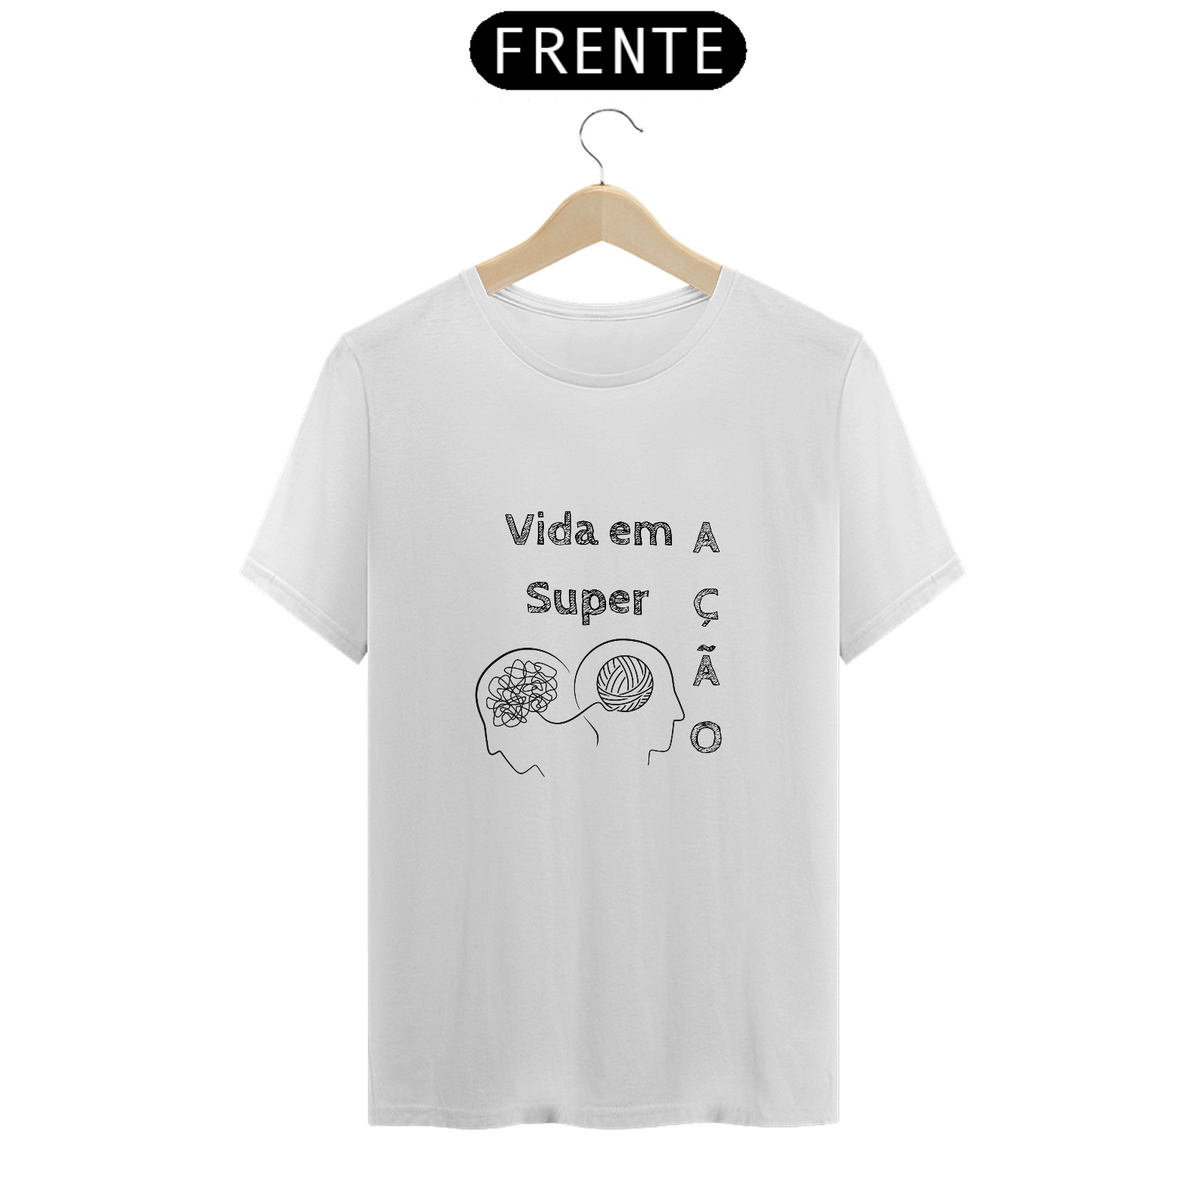 Nome do produto: T-Shirt Vida em Superação